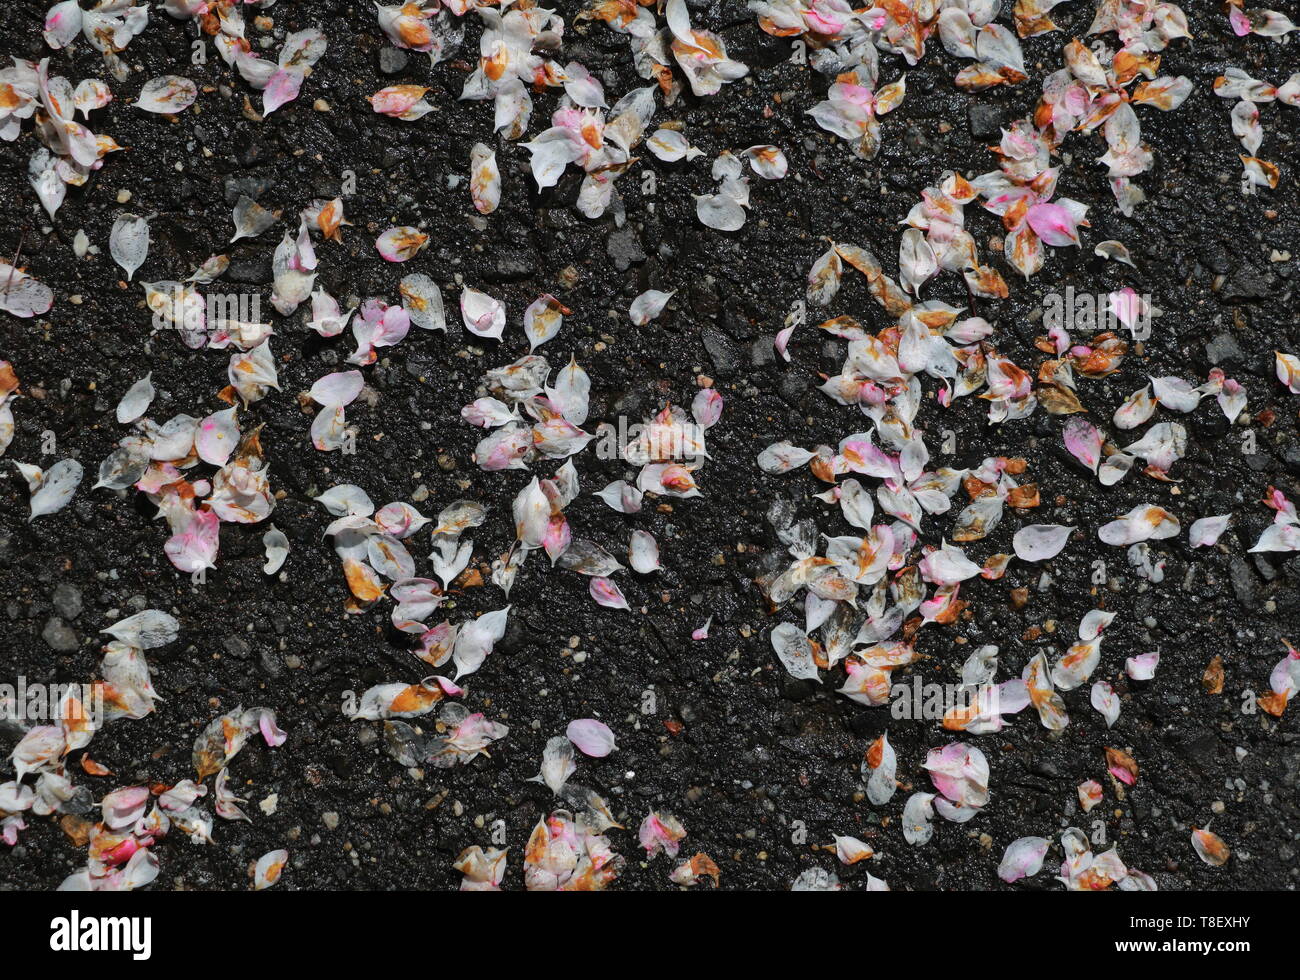 Rose et blanc humide pétales de fleurs sur le sol après une douche de printemps Banque D'Images